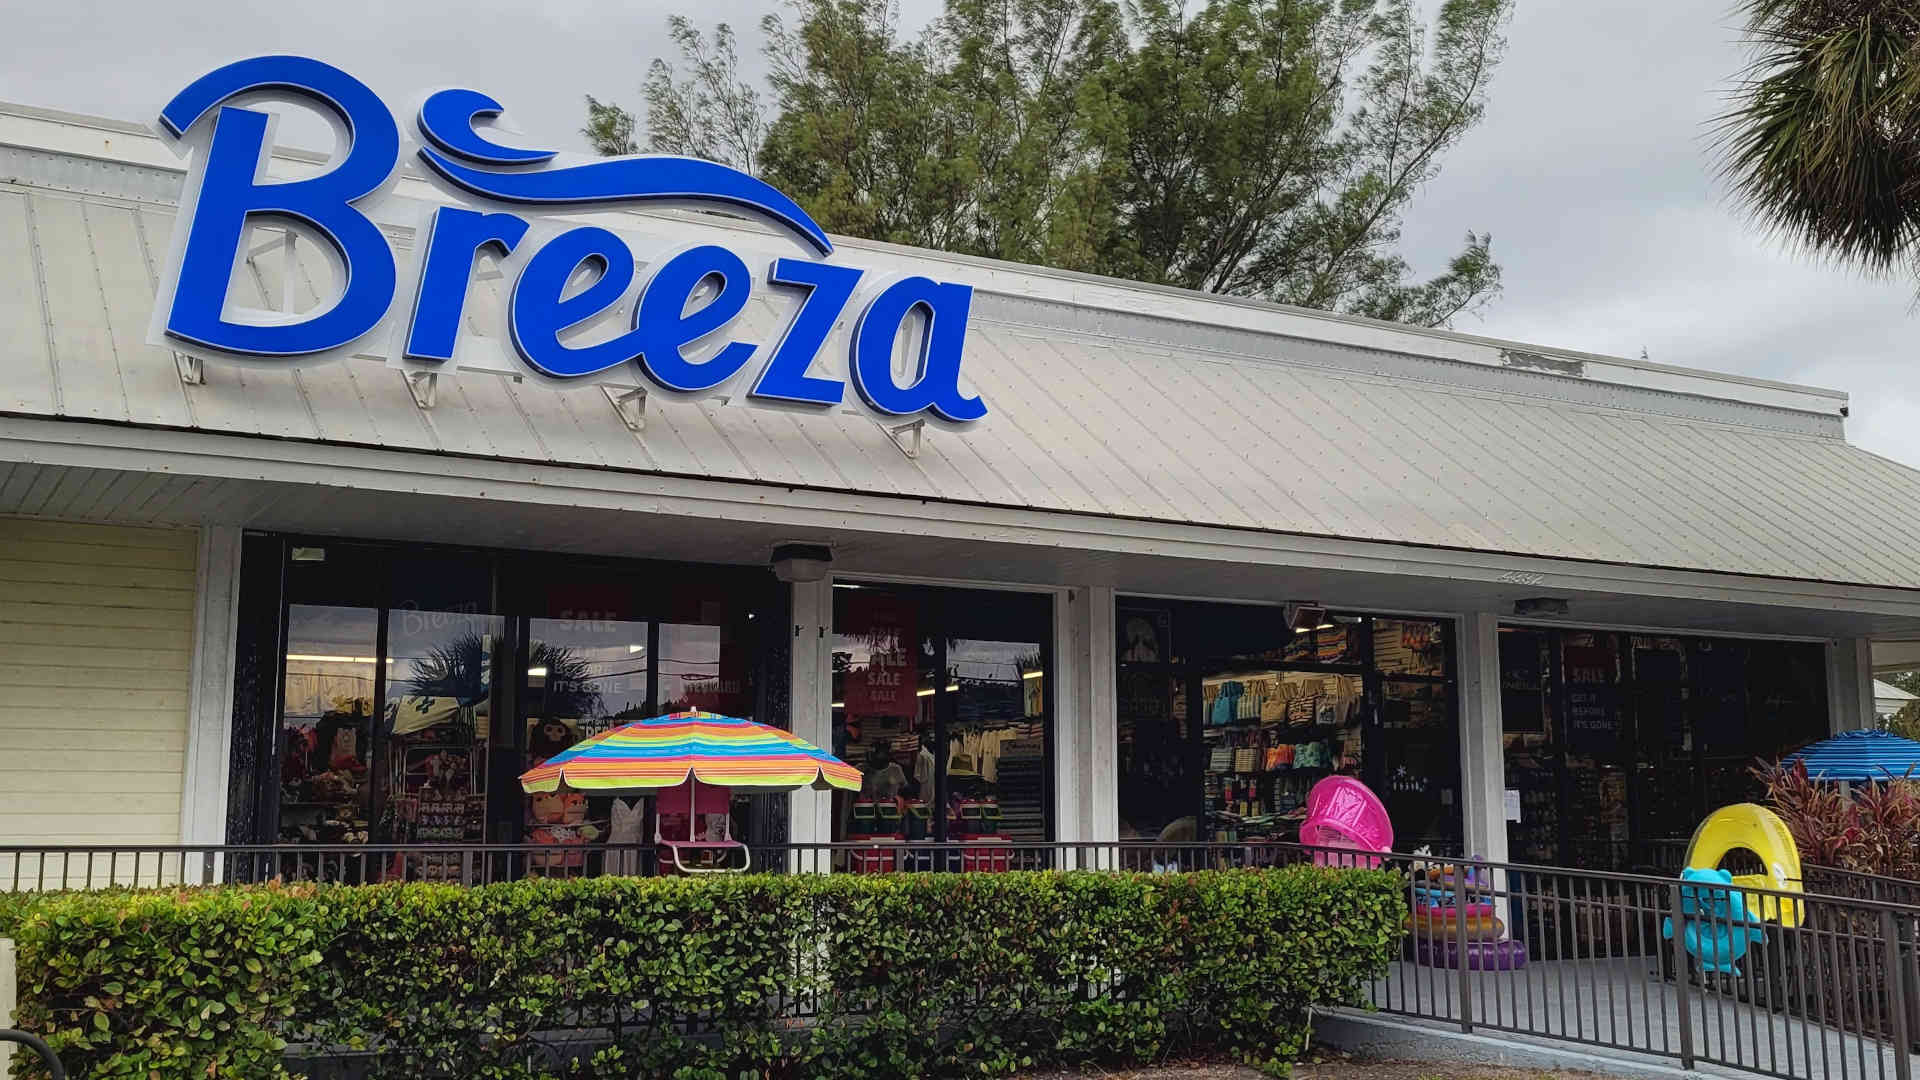 Photo of the Breeza Store Location in Jensen Beach, FL